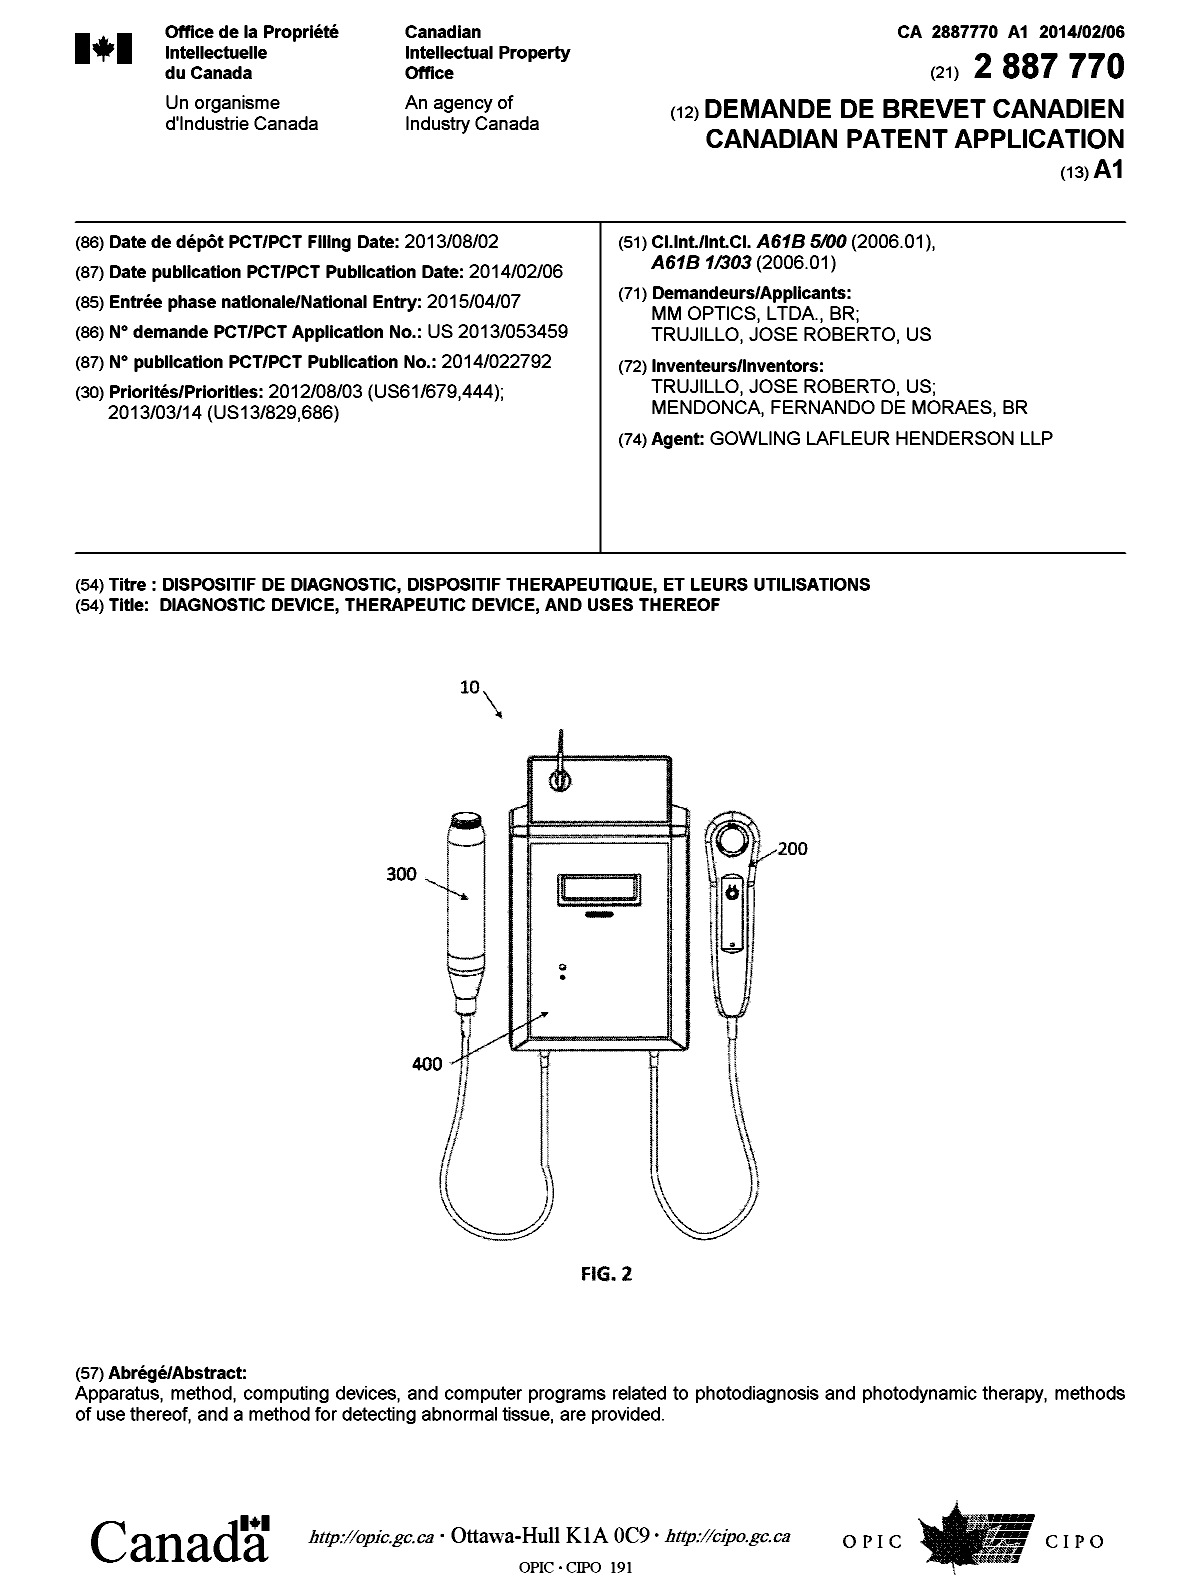 Document de brevet canadien 2887770. Page couverture 20150429. Image 1 de 1